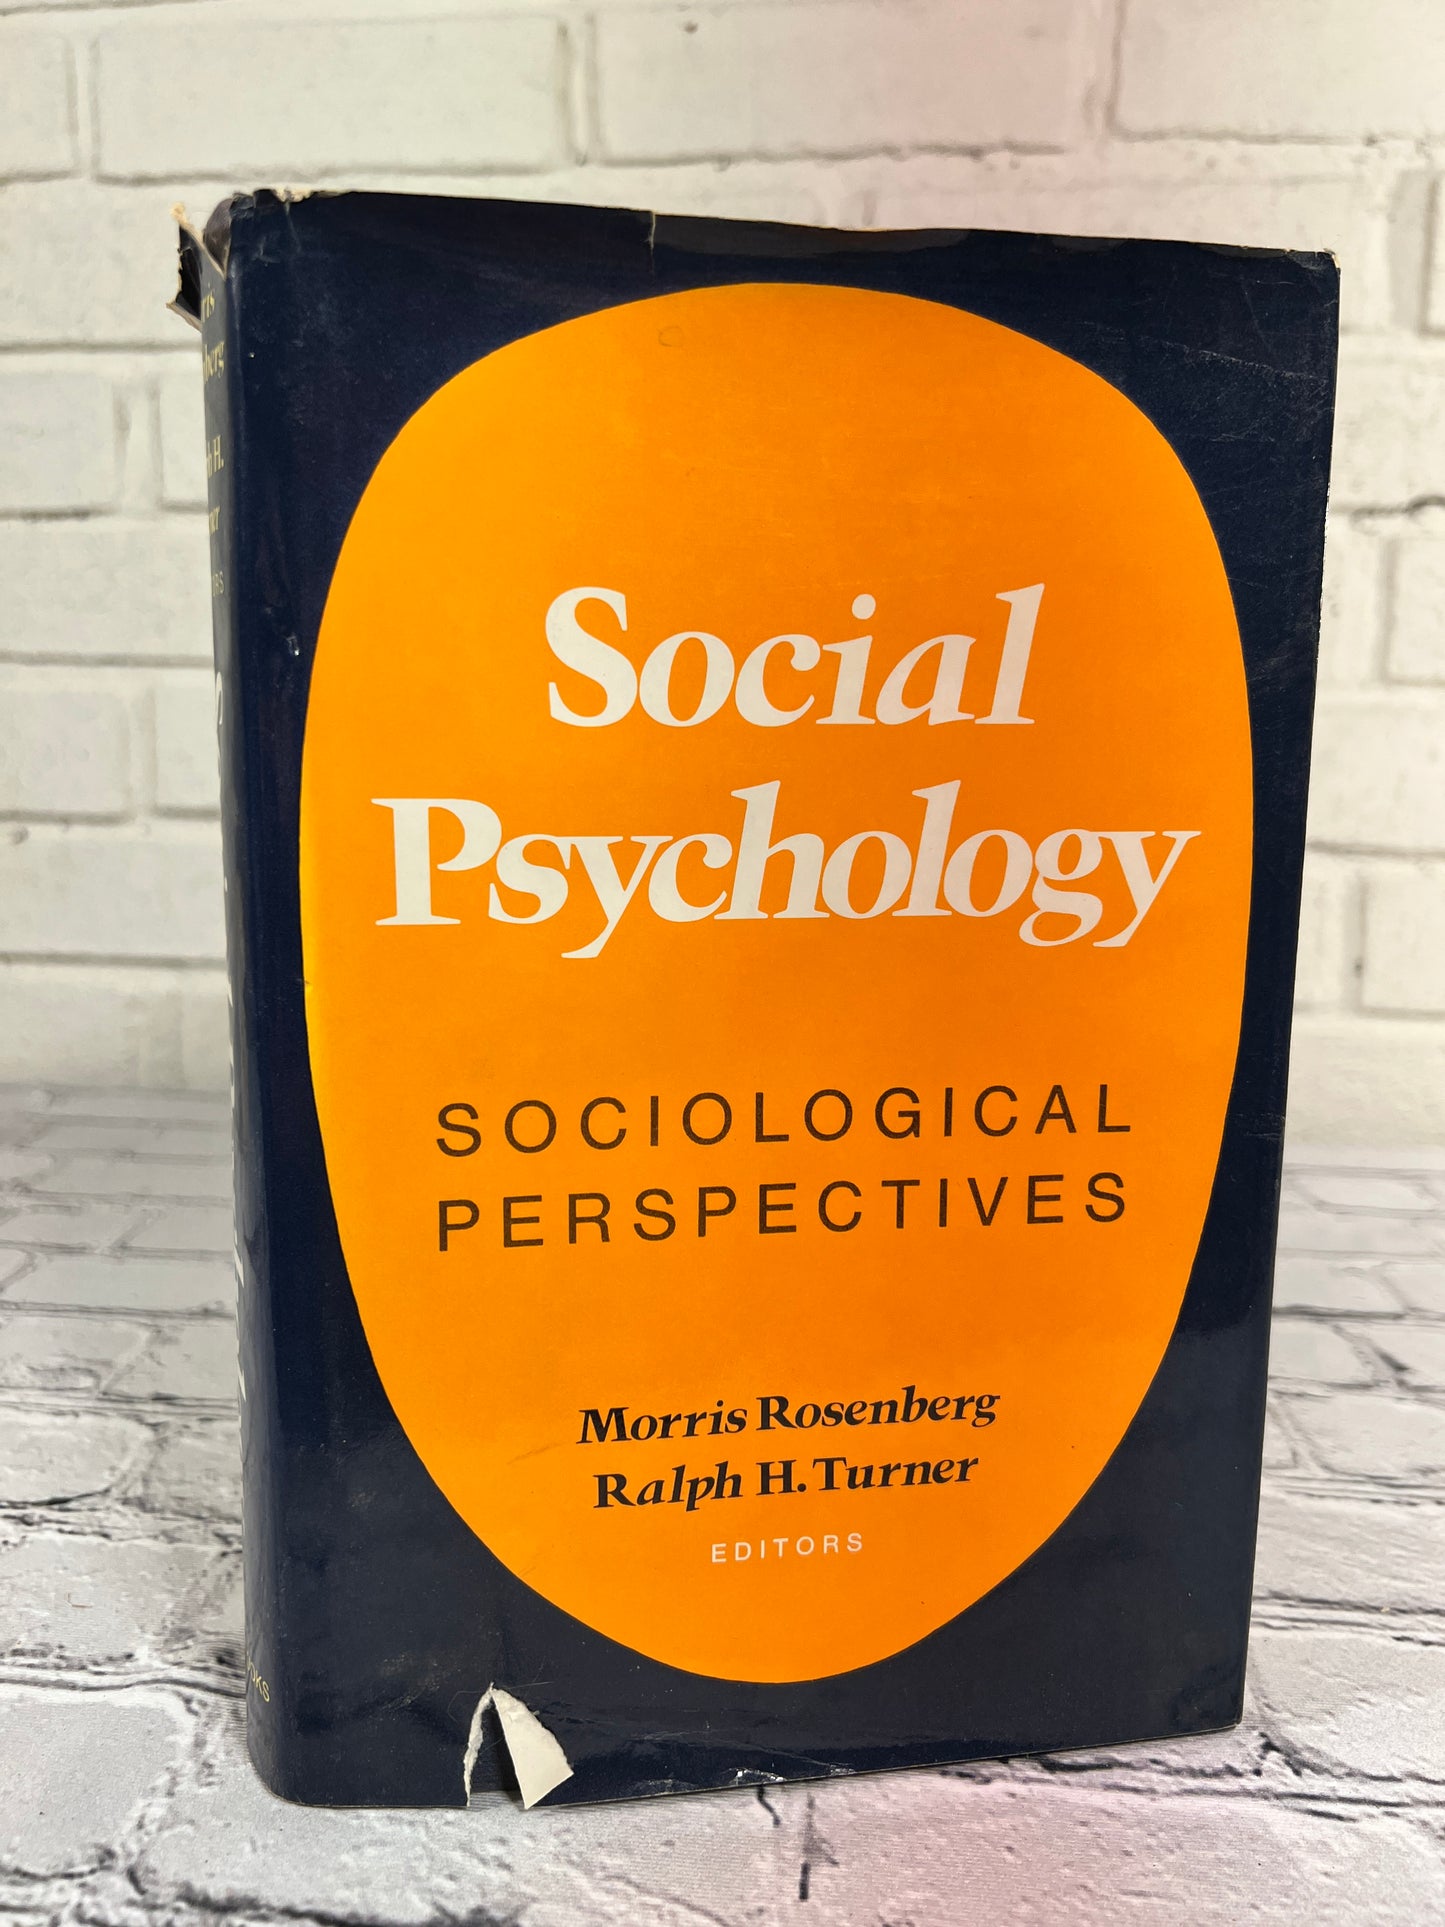 Social Psychology: Sociological Perspectives by Rosenberg & Turner